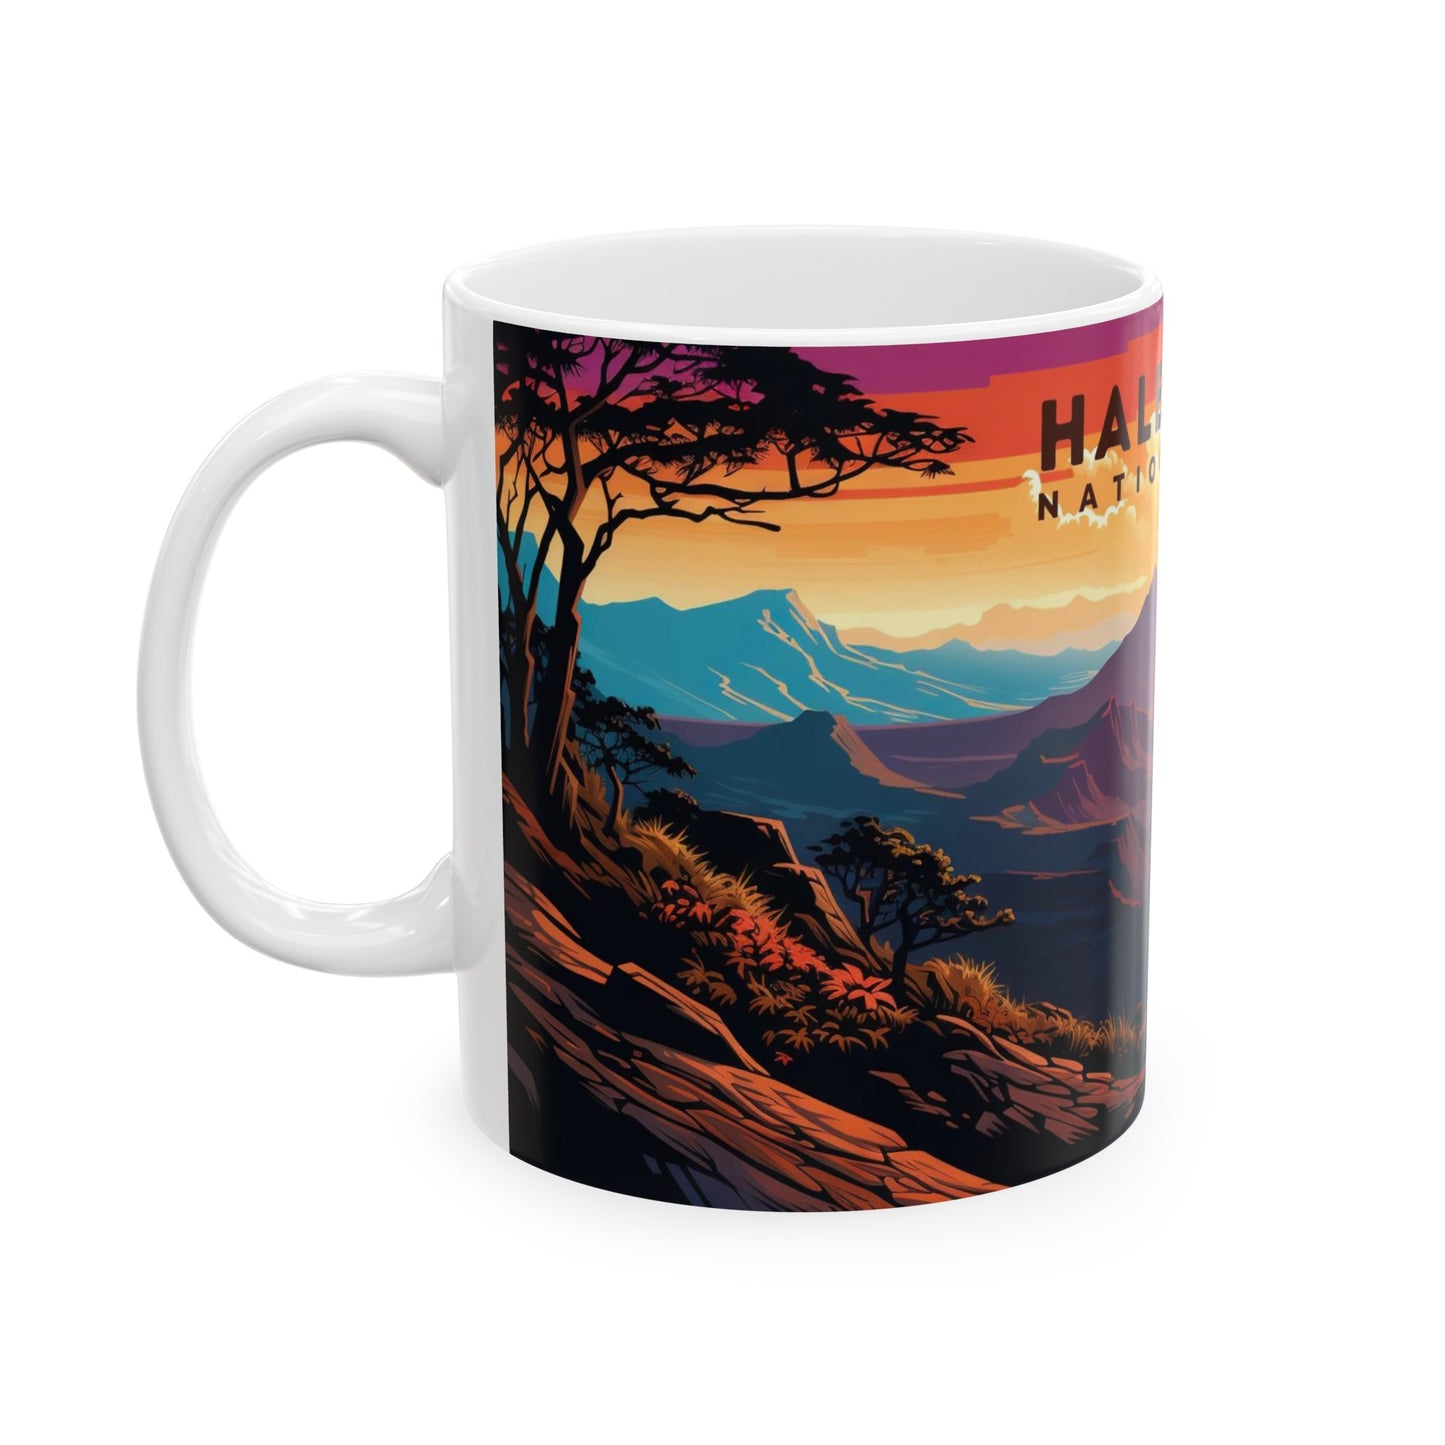 Haleakala National Park Mug | White Ceramic Mug (11oz, 15oz)